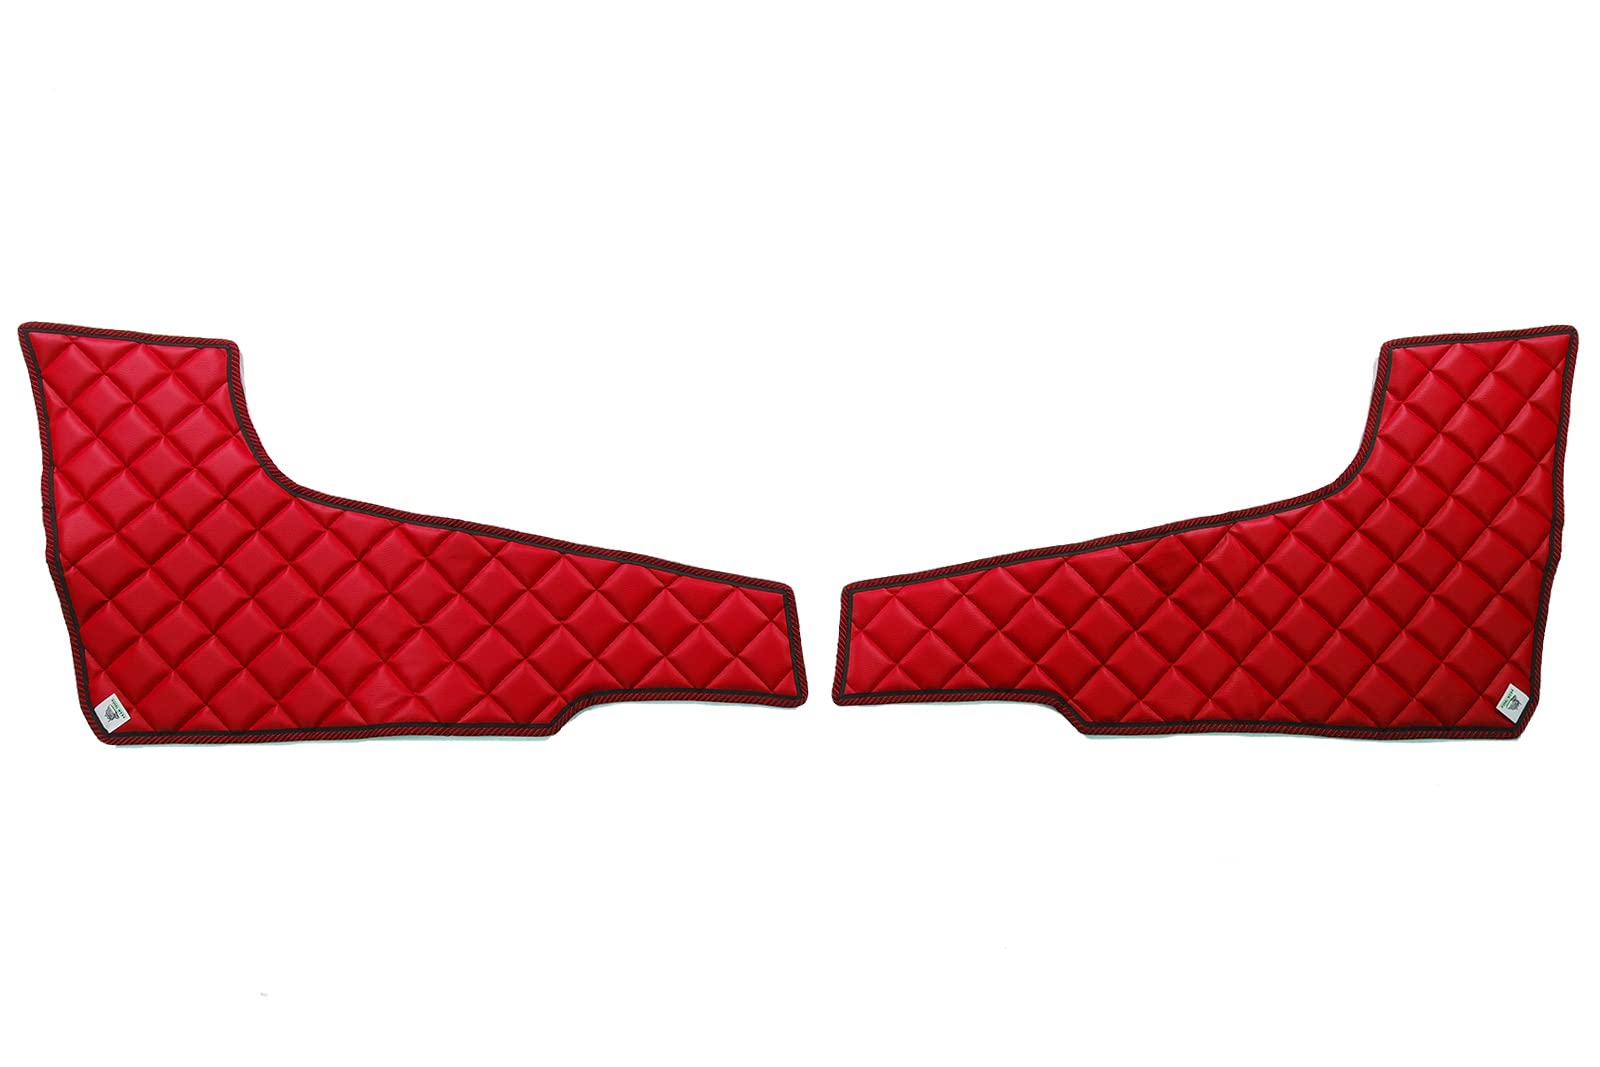 KRAM-TRUCK Seitenteile an der Tür gesteppt 2 Stück, Kompatibel mit Volvo FH4 2013, Rot, Klettbefestigung, Kunstleder auf Schwamm 1 cm, Hygienezertifikat von KRAM-TRUCK